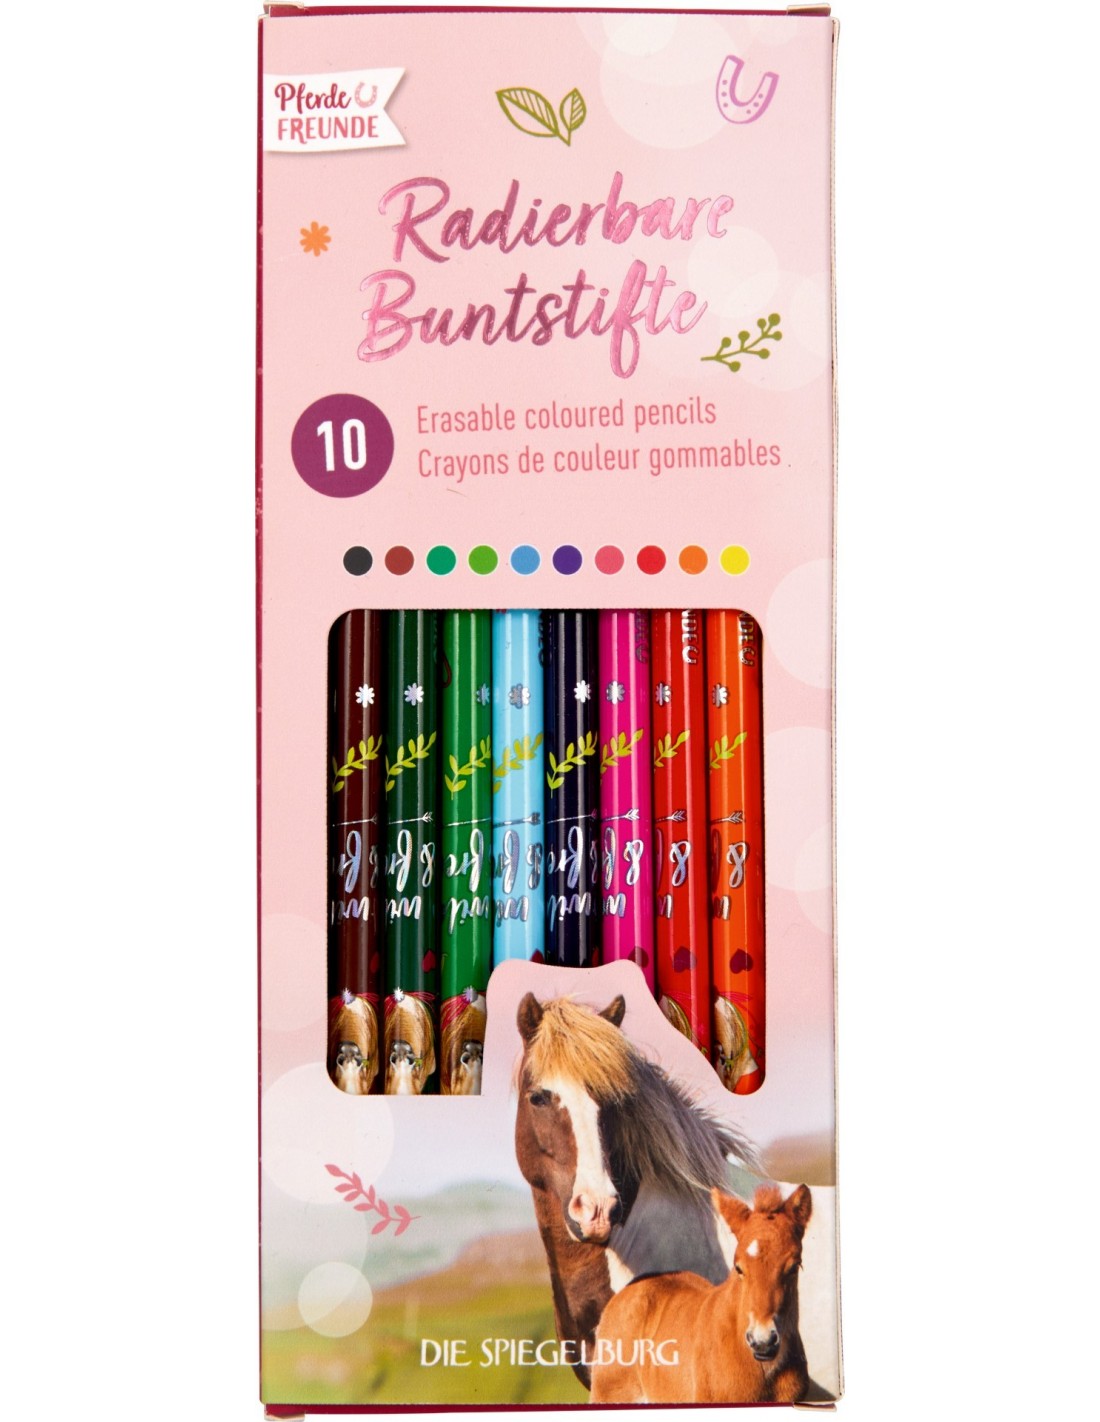 10 Erasable colored pencils